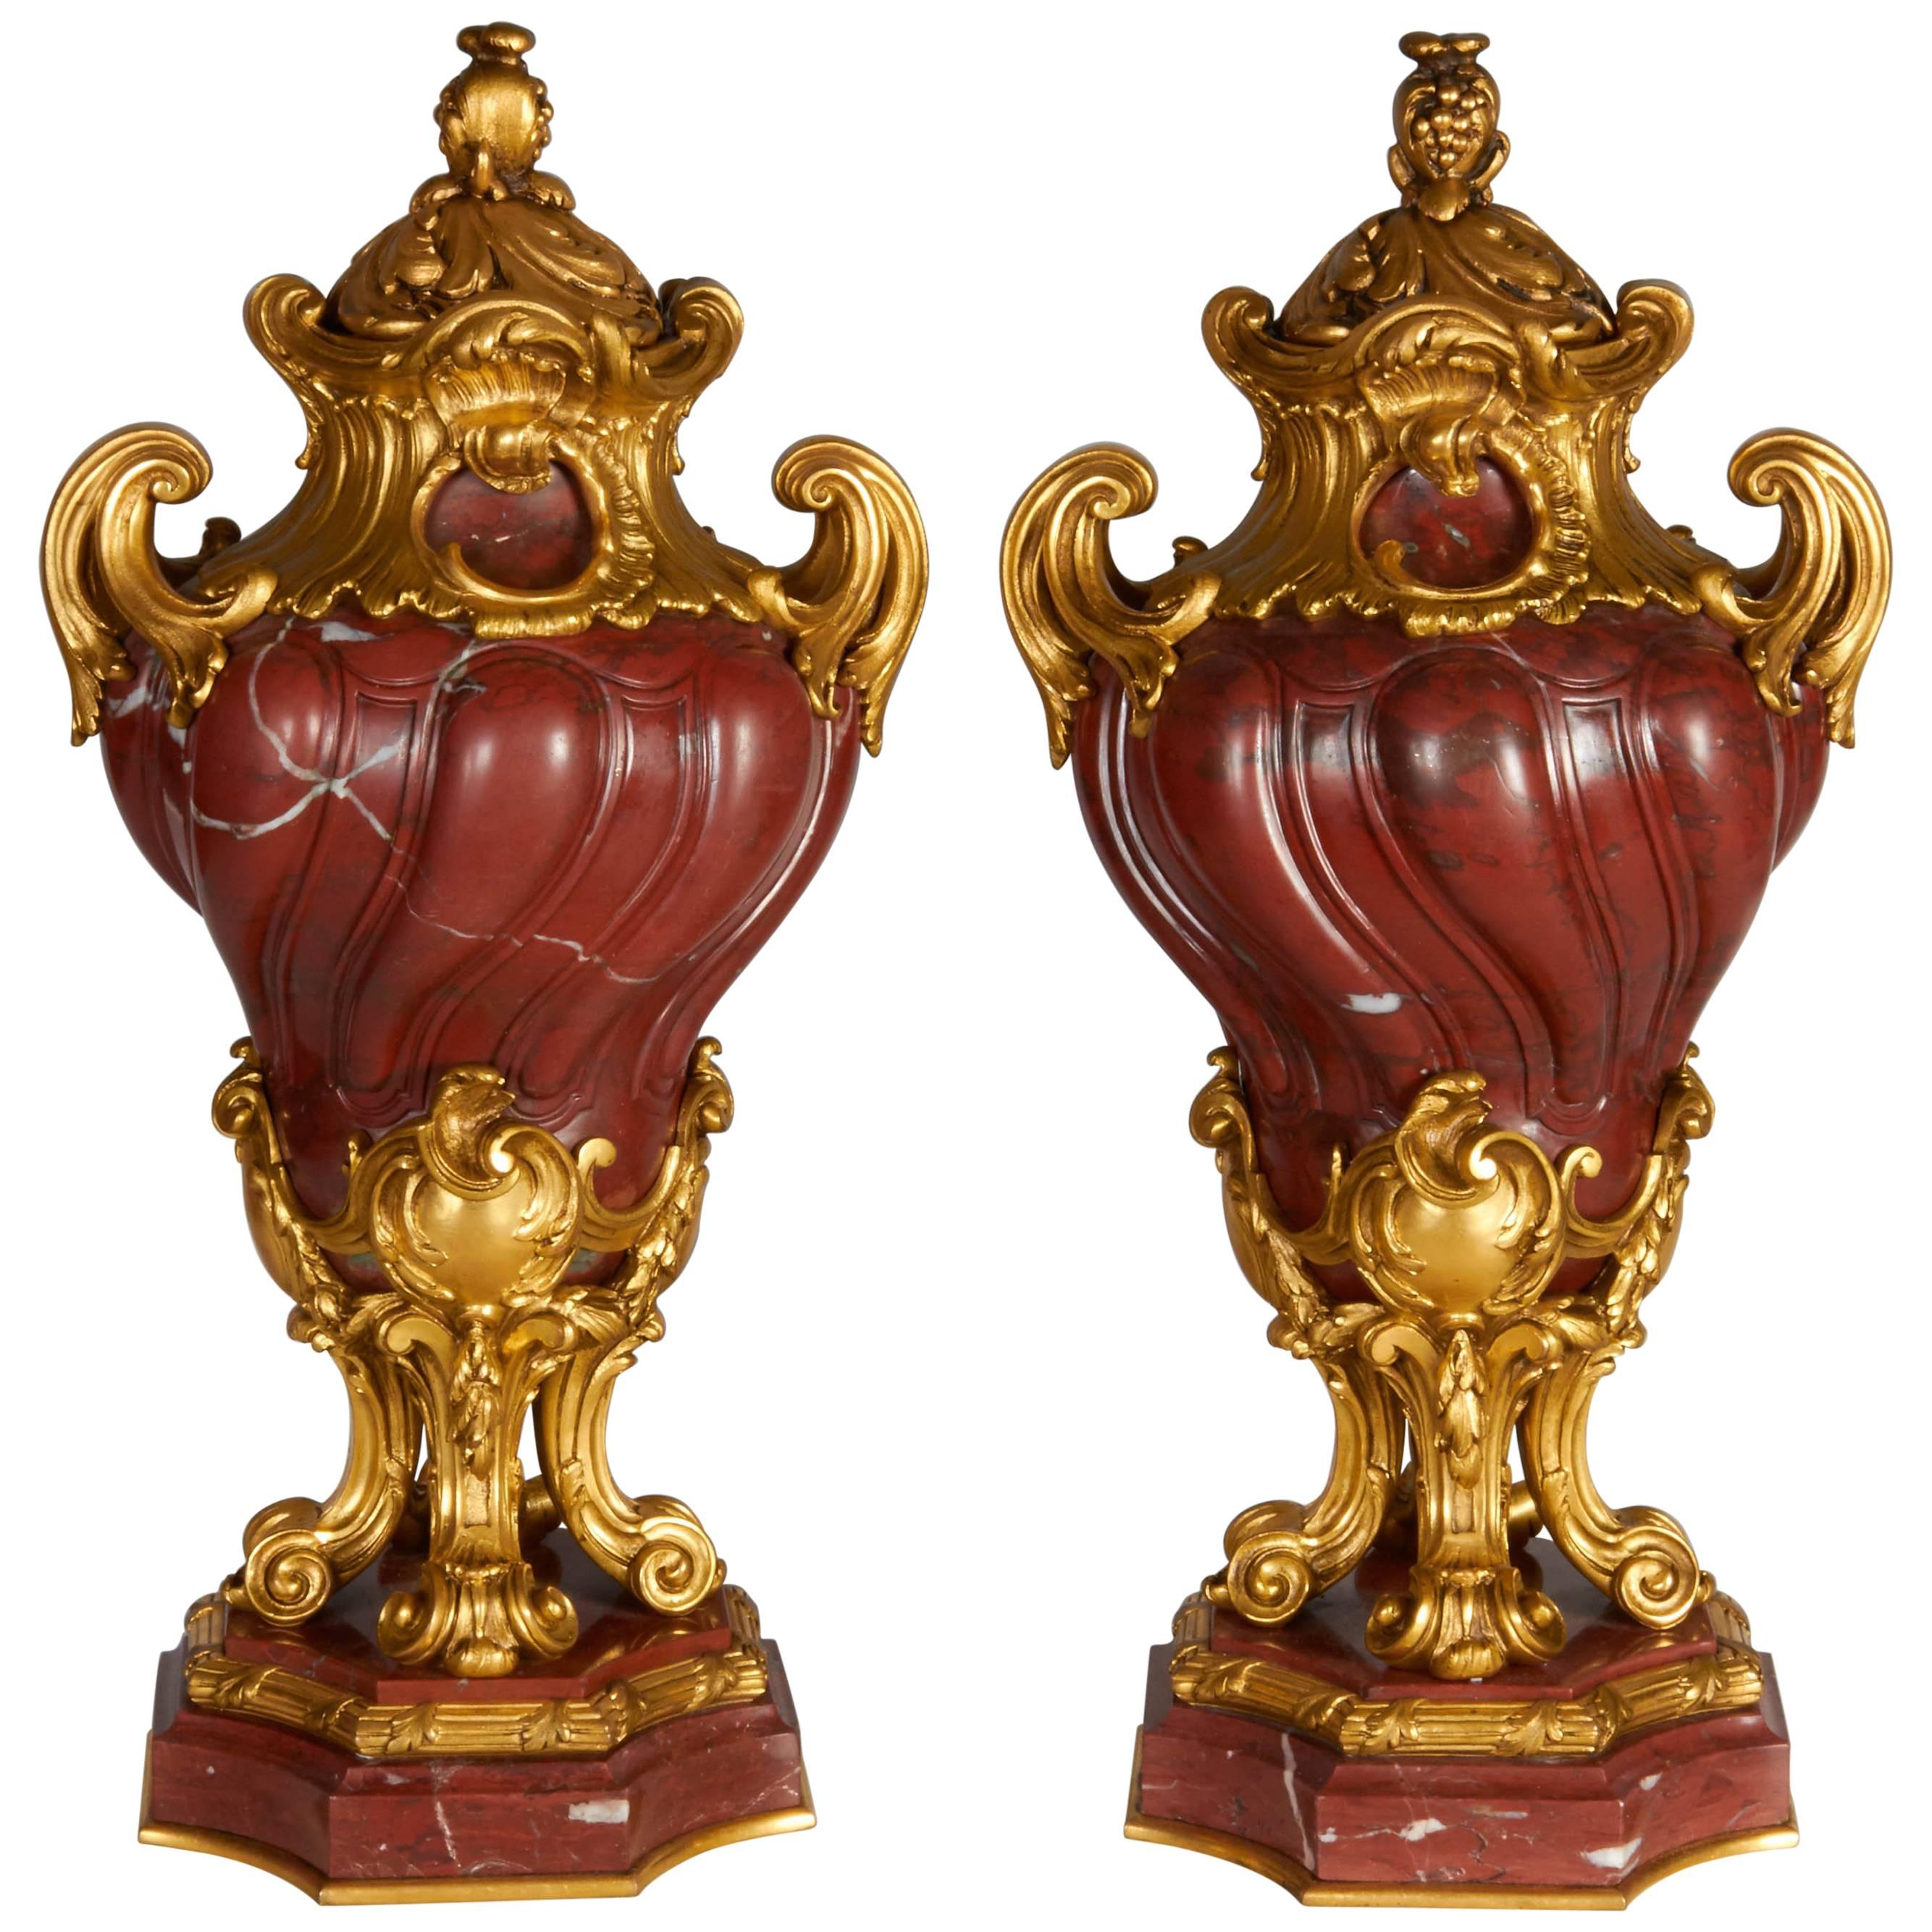 Paire de vases anciens de style transitionnel français en marbre rouge griotte montés en bronze doré